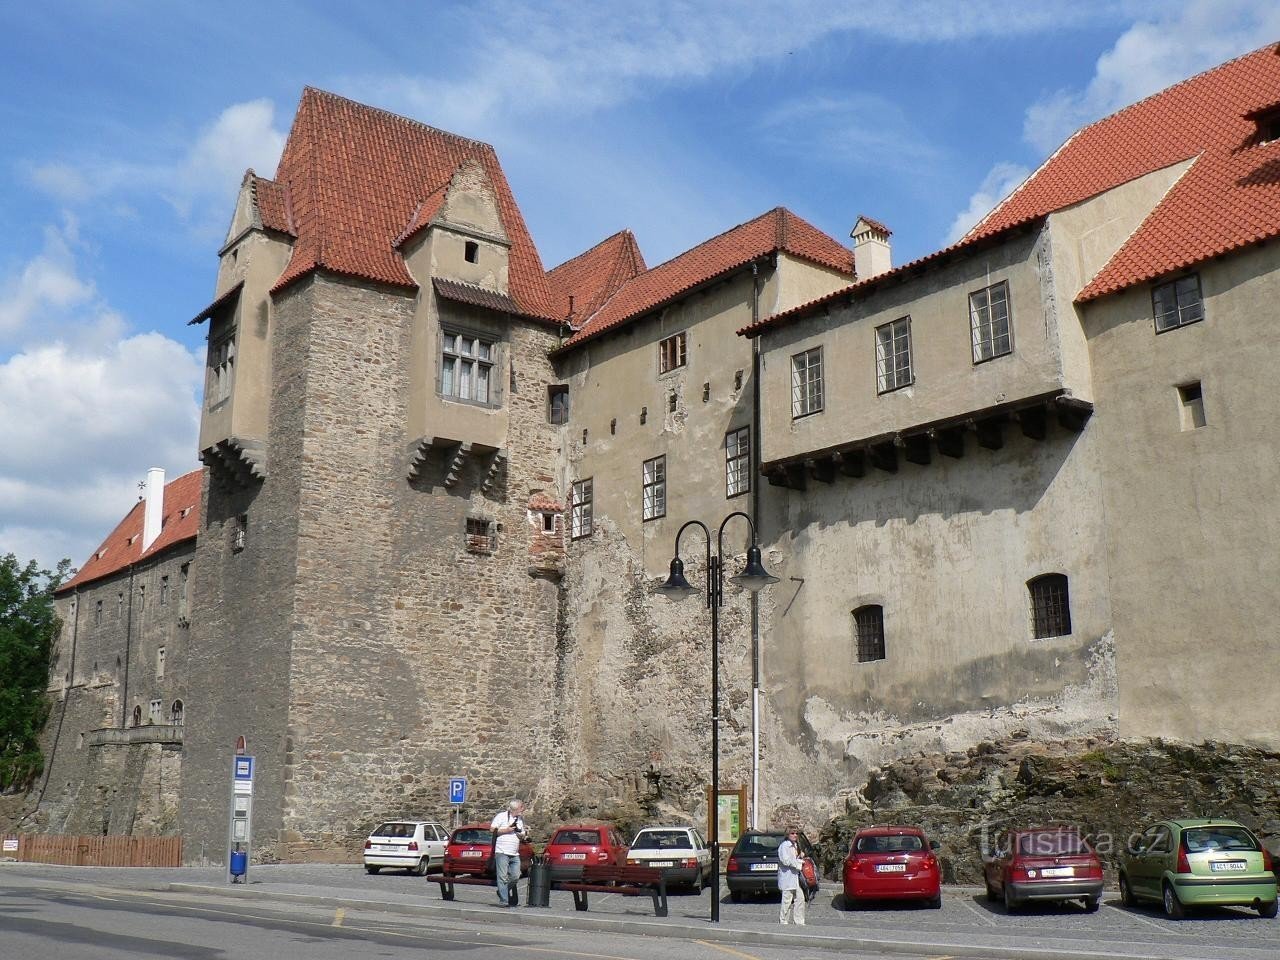 Strakonický Castle, Jelenka